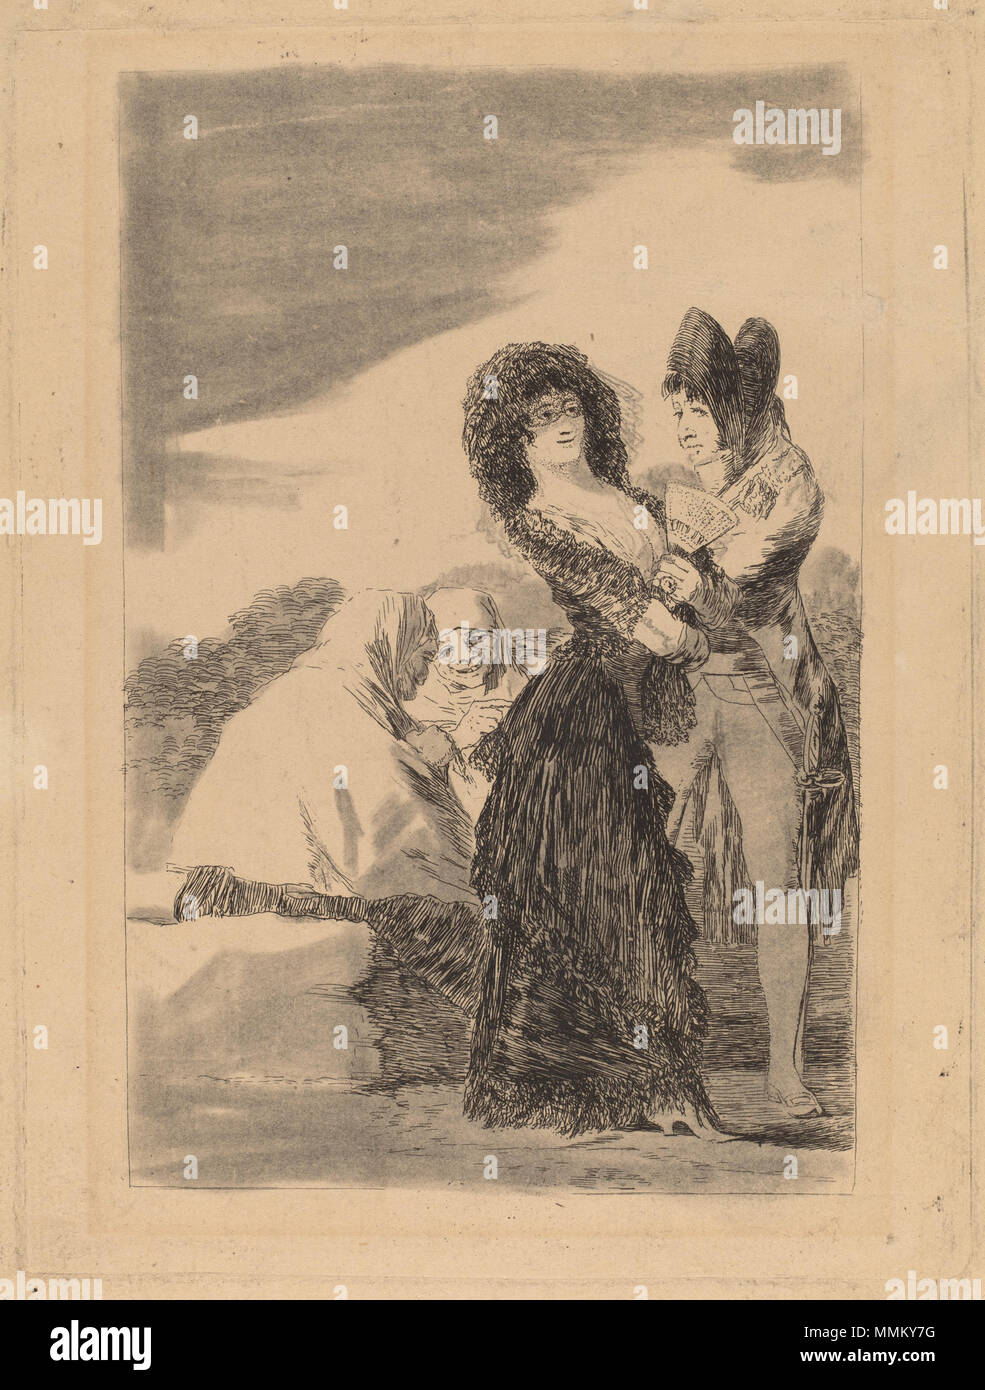 Francisco de Goya, Tal para qual (due di un genere), spagnolo, 1746 - 1828, o prima del 1799, l'attacco ritoccate con gesso nero, sfregate o stumped [prova di lavoro], Rosenwald Collection Goya - Tal para qual (due di un genere) Foto Stock